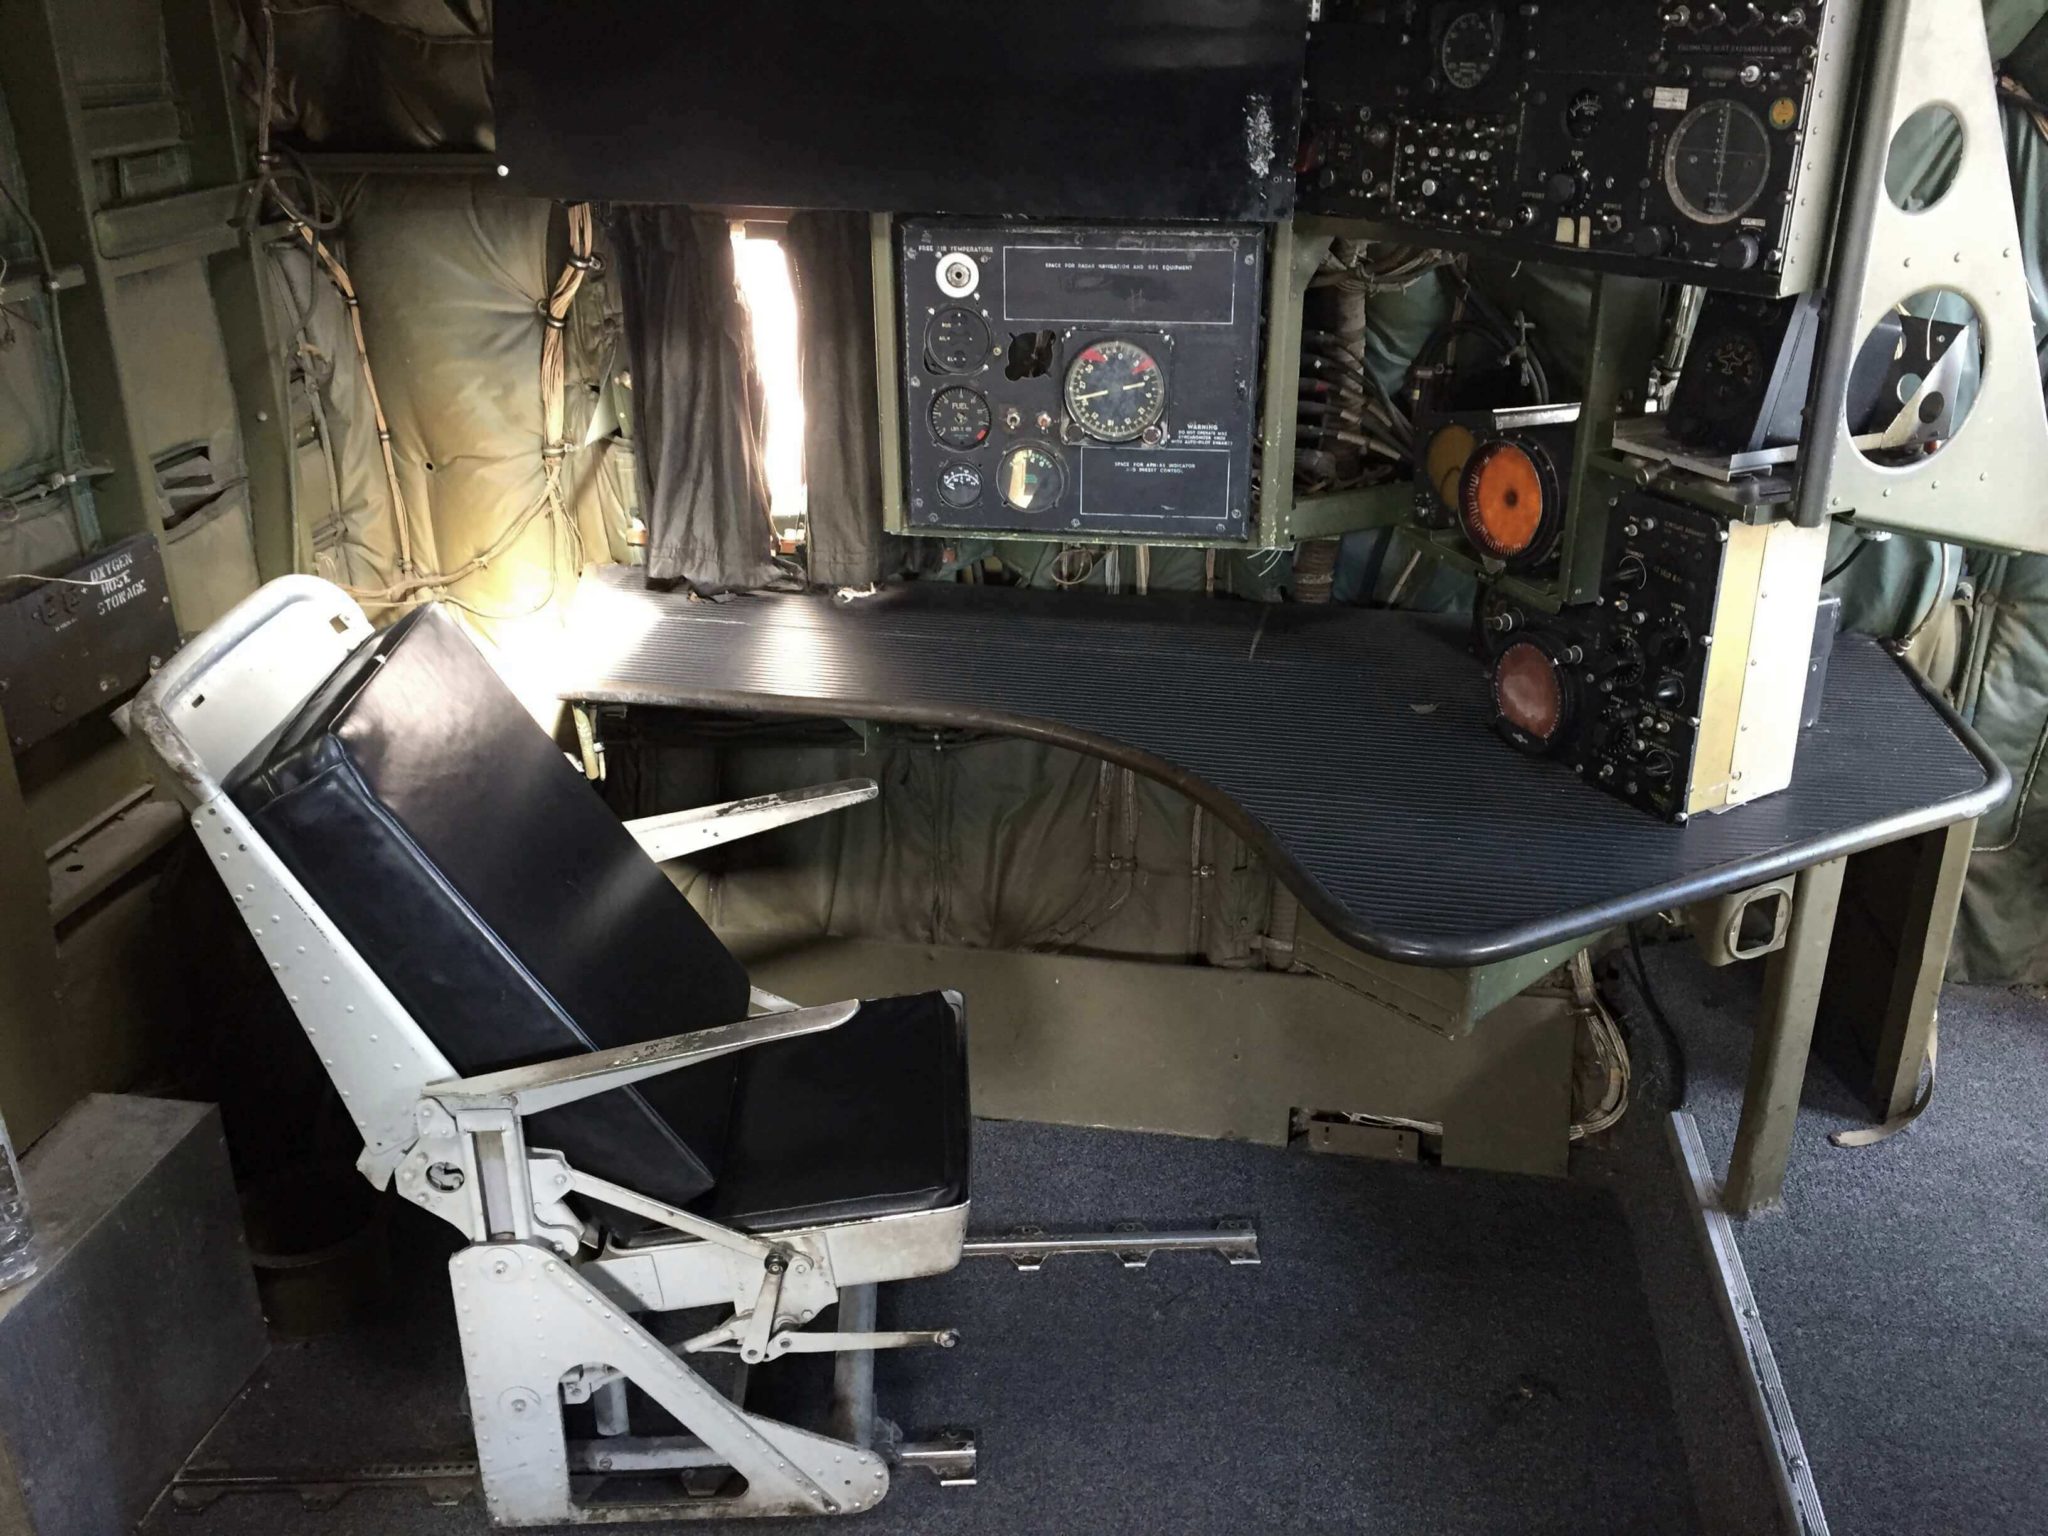 The Airplane Restaurante, cockpit